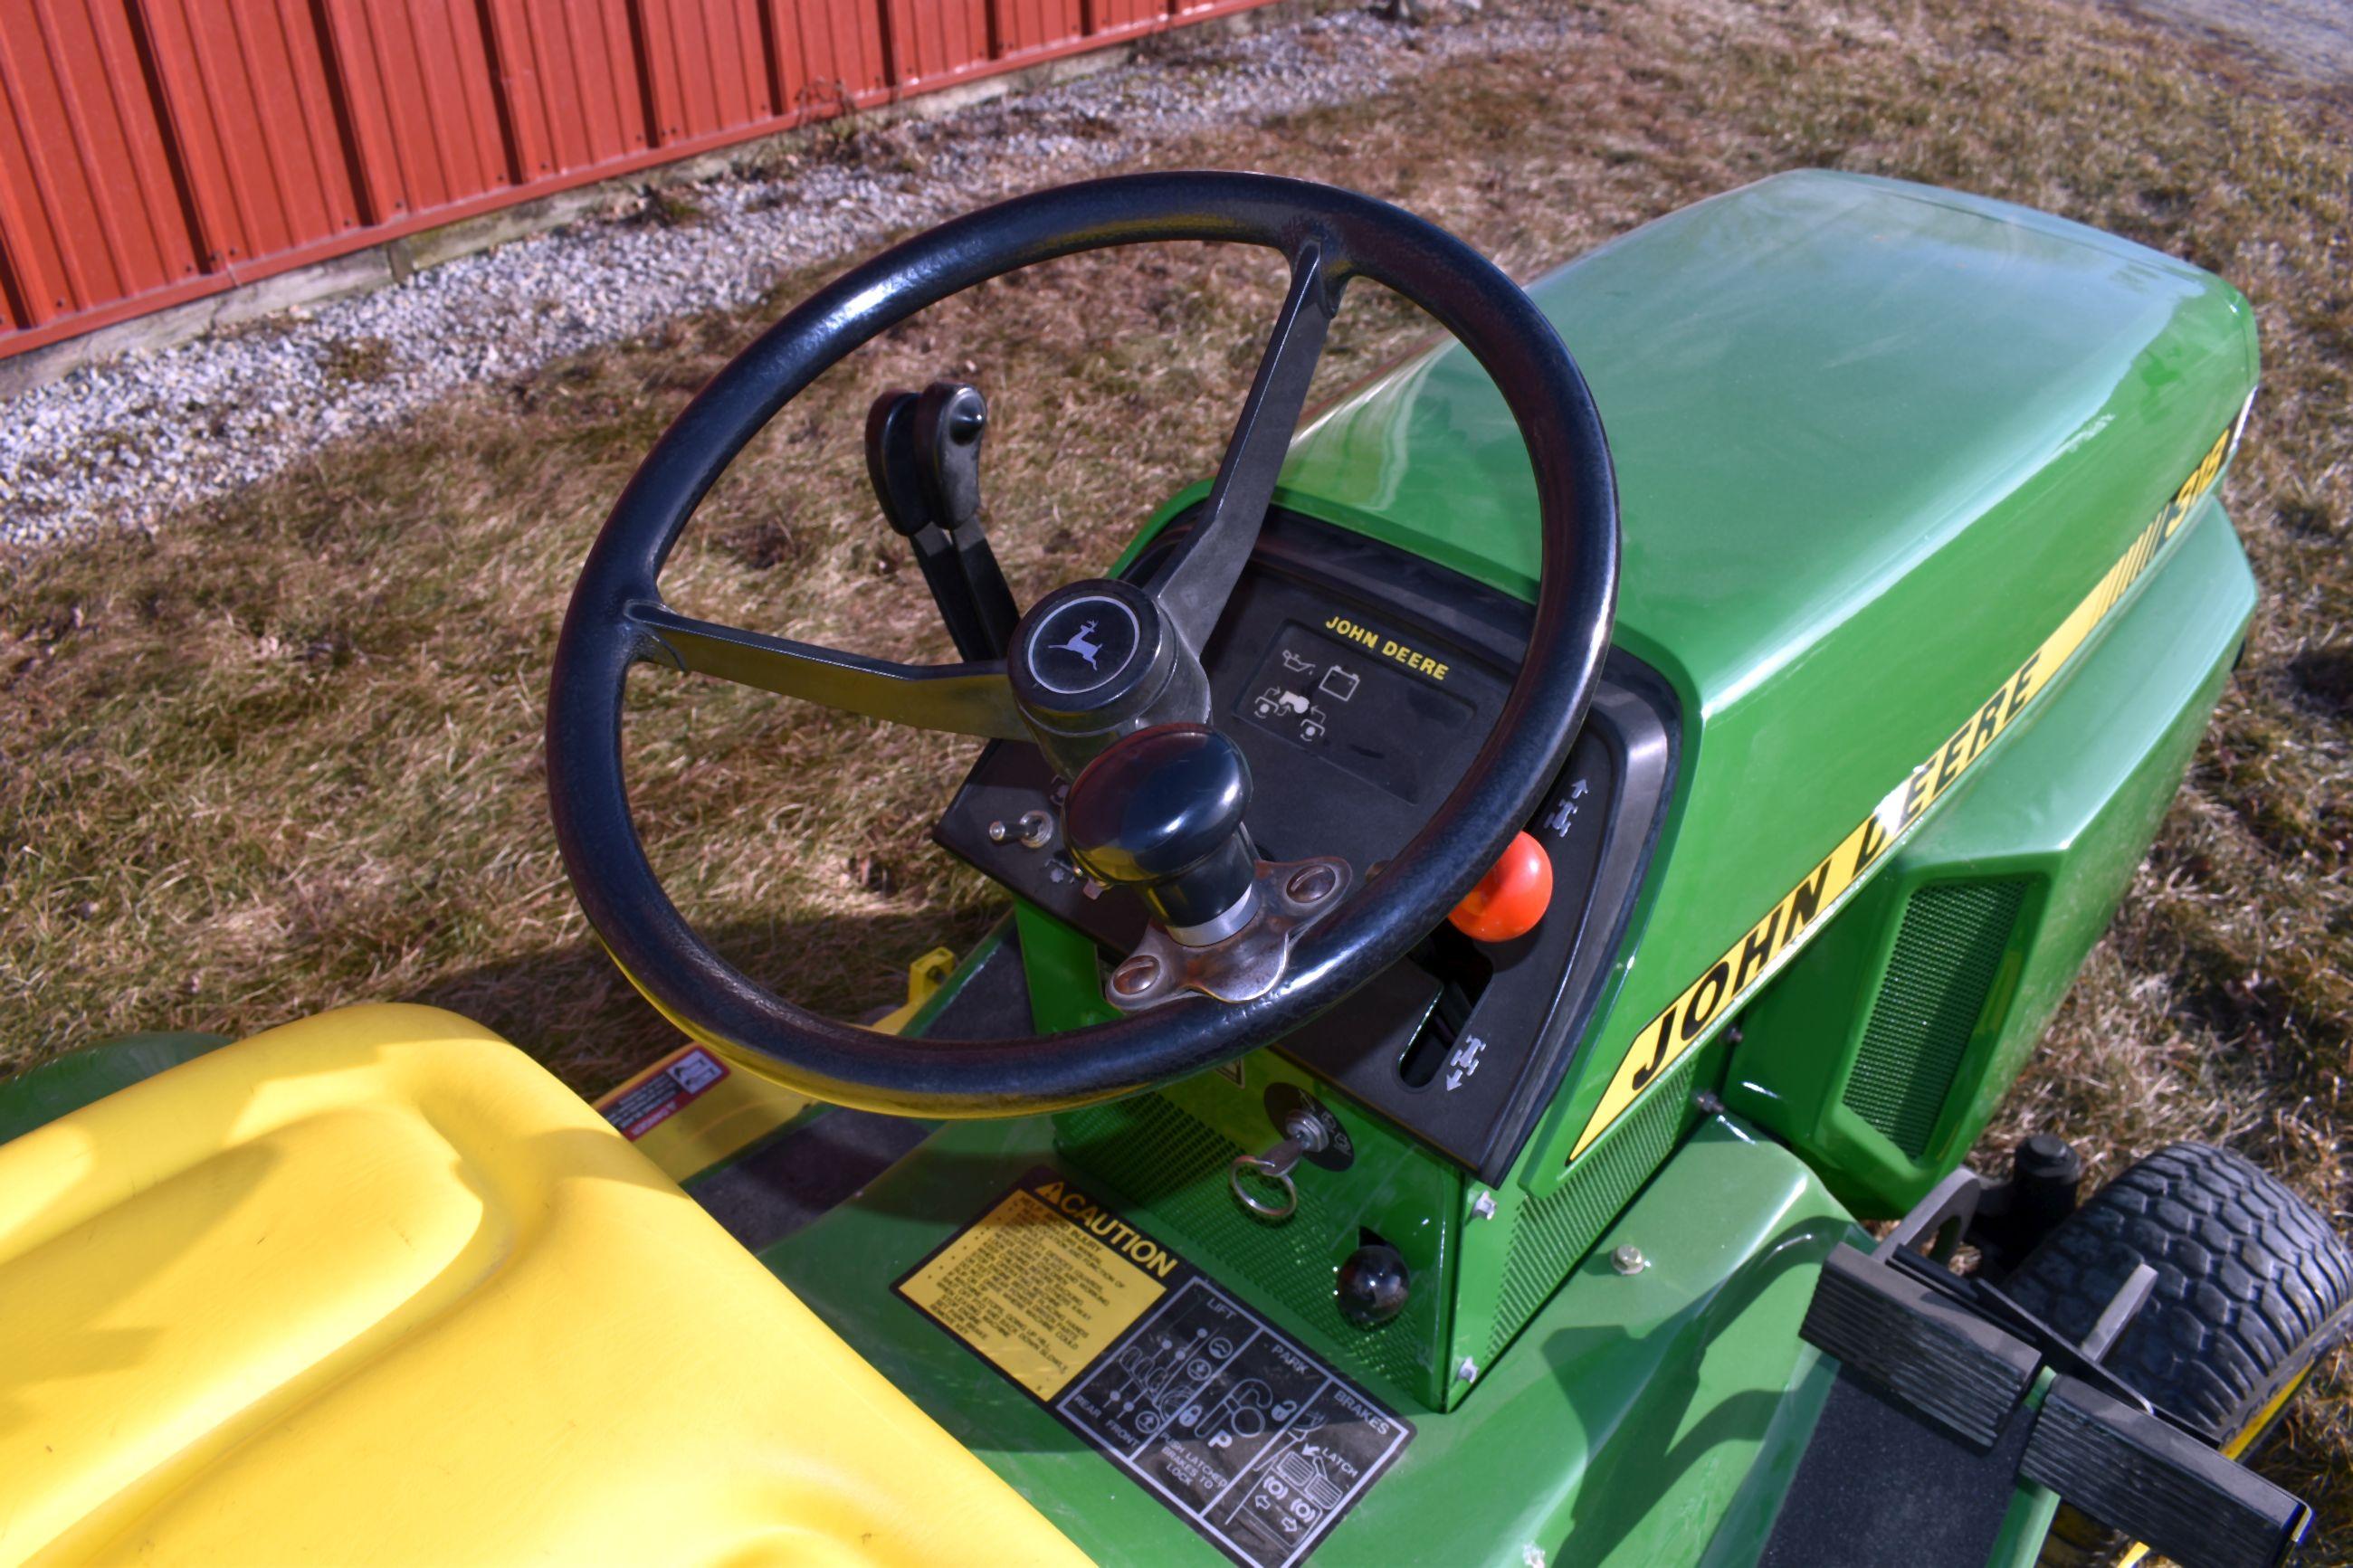 John Deere 318 Garden Tractor, 50” Deck, Hydro, 800 Hours On Overhauled Engine, New Paint